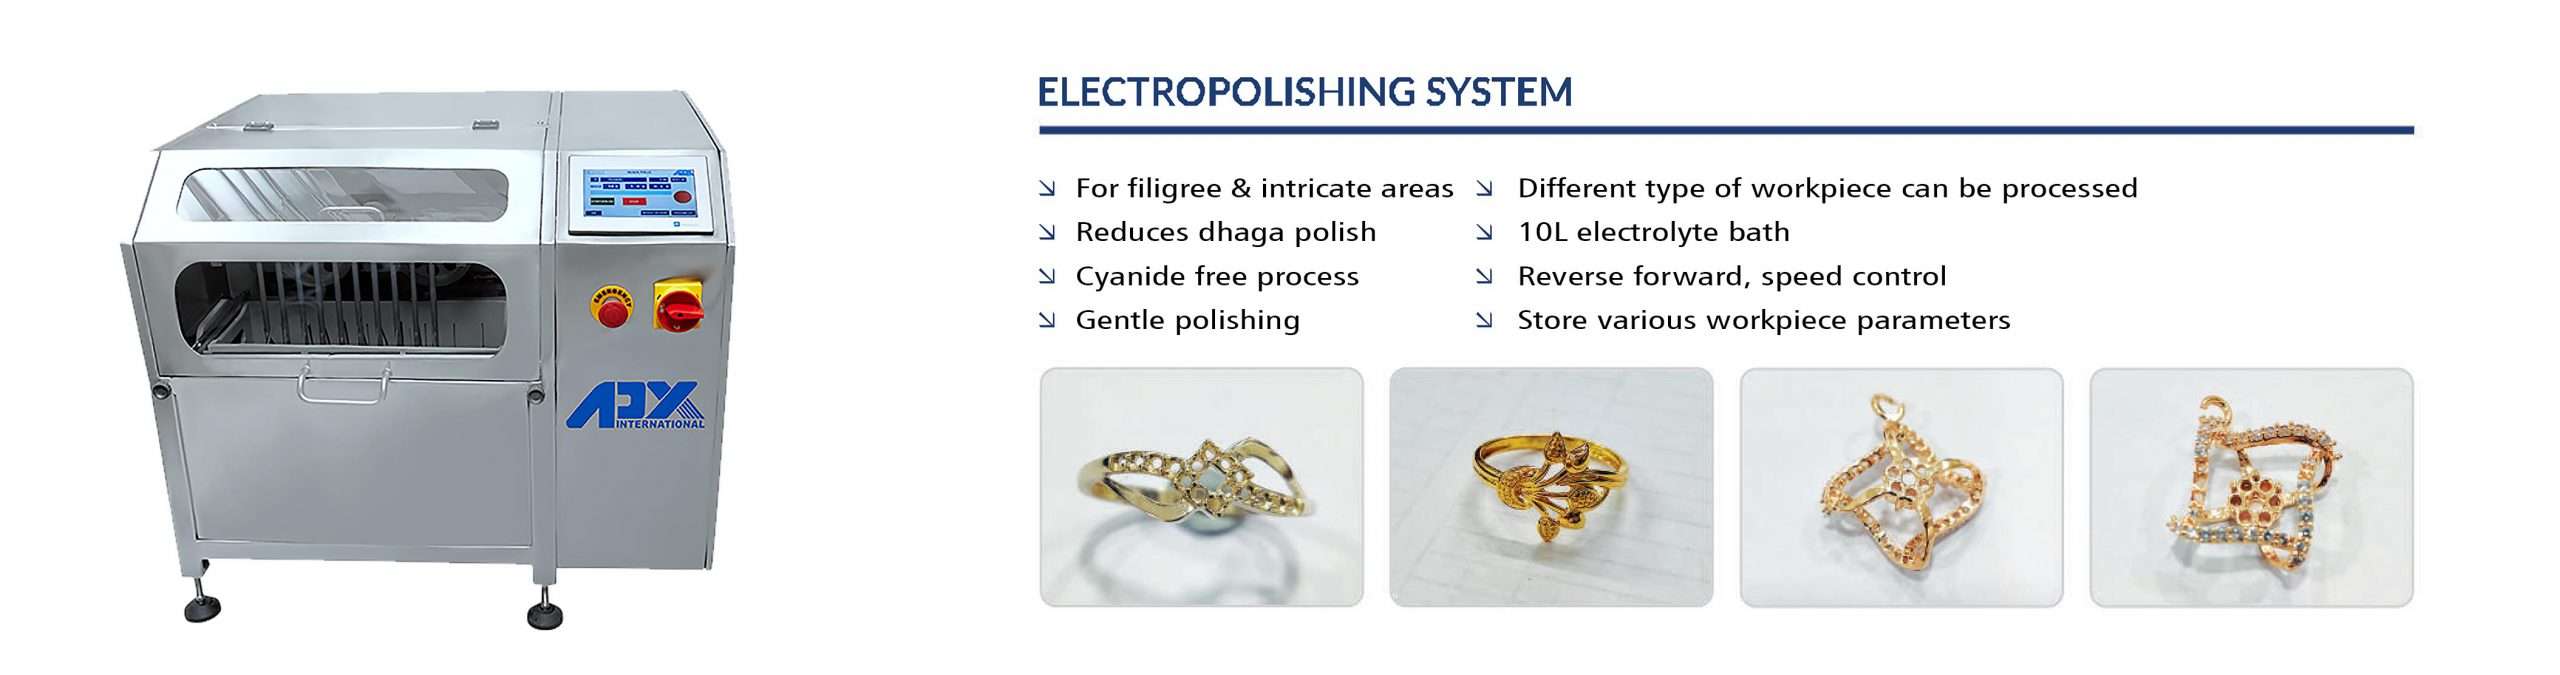 Electro polishing system